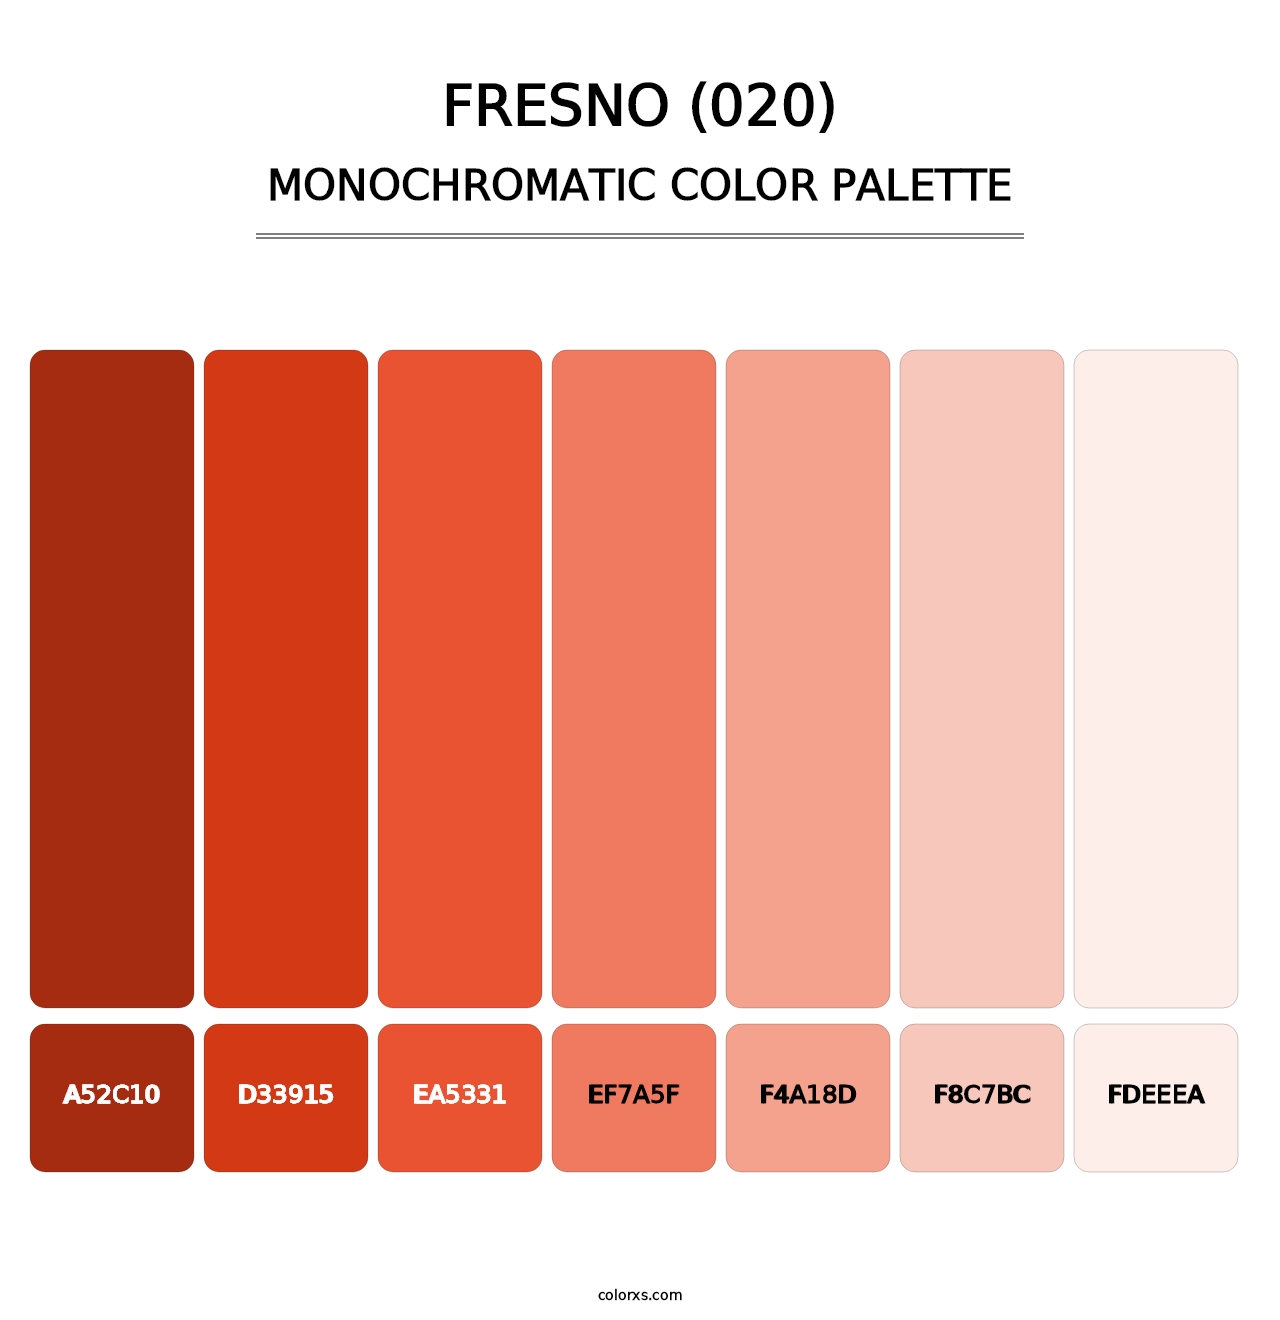 Fresno (020) - Monochromatic Color Palette